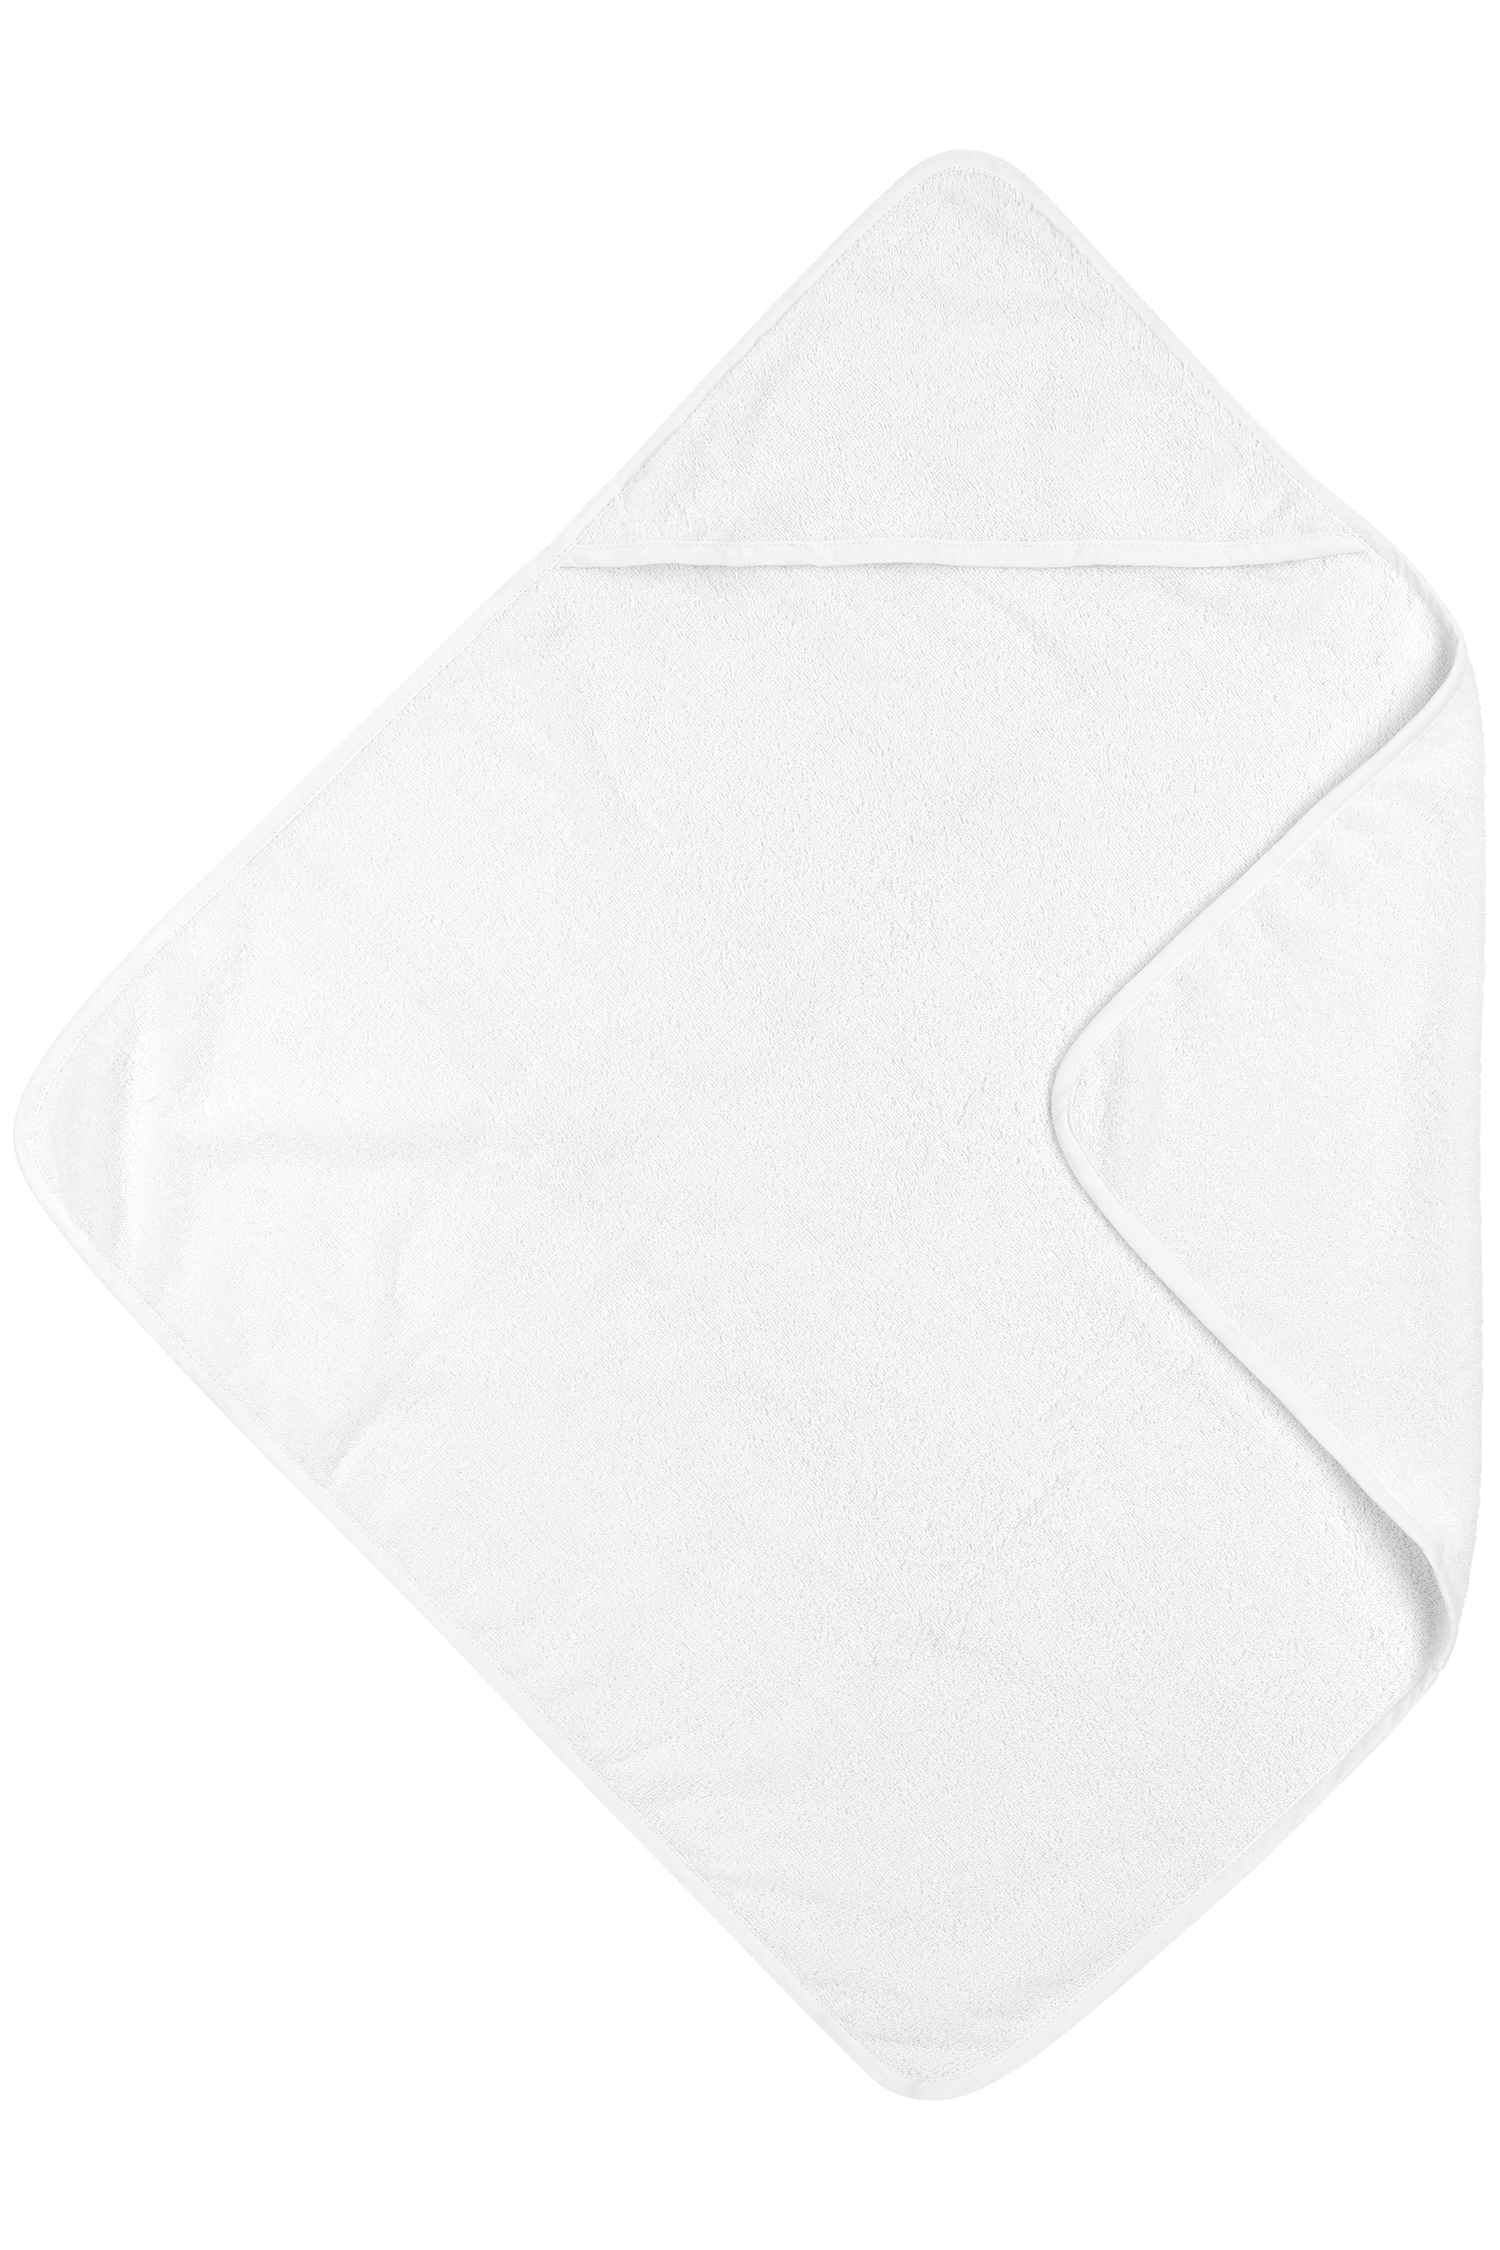 Bathcape terry Uni - white - 75x75cm